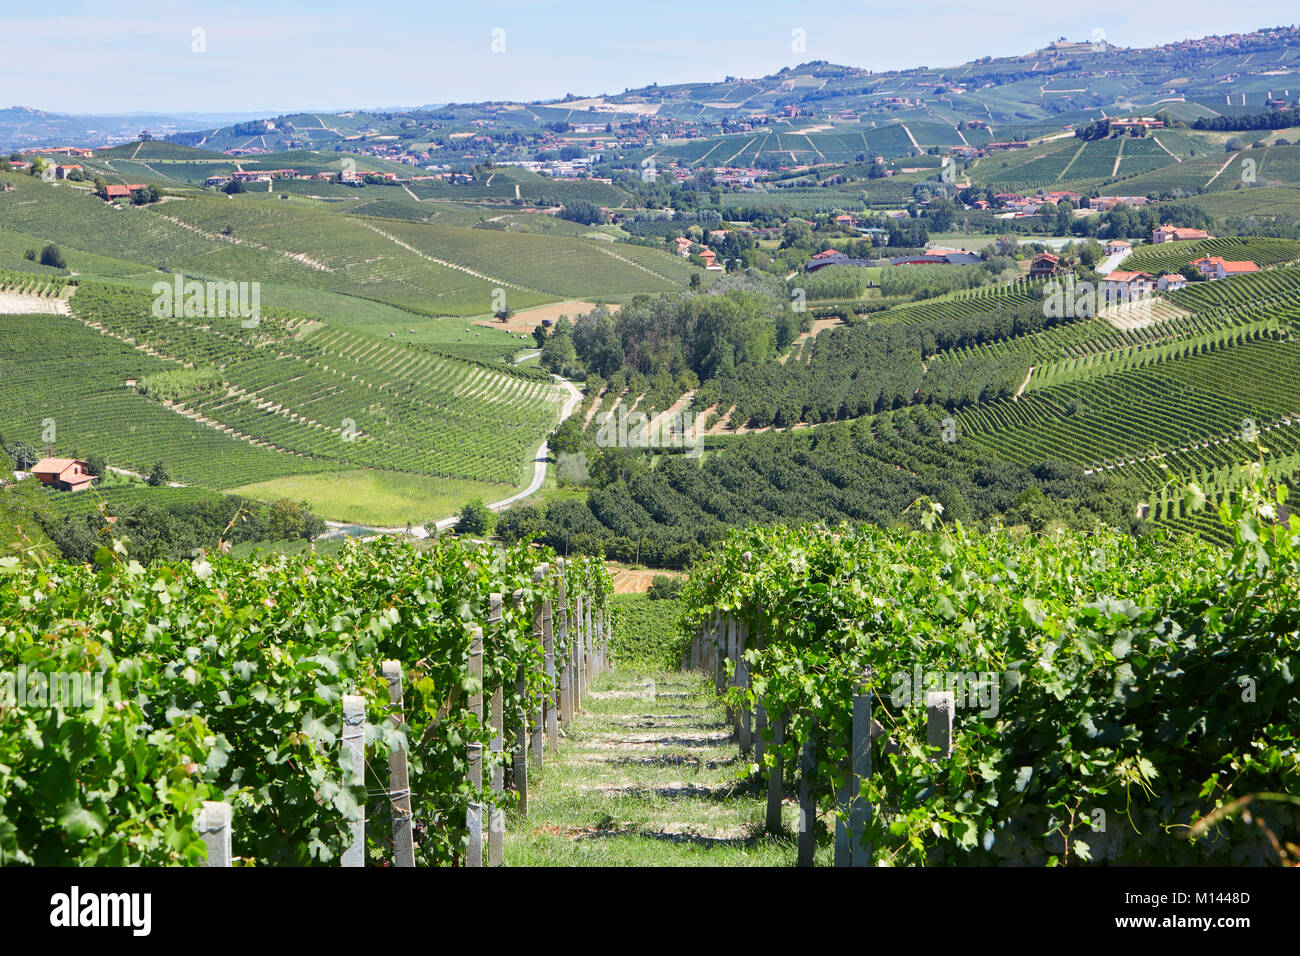 Verde paisaje con viñedos y árboles en Piamonte, Italia Foto de stock